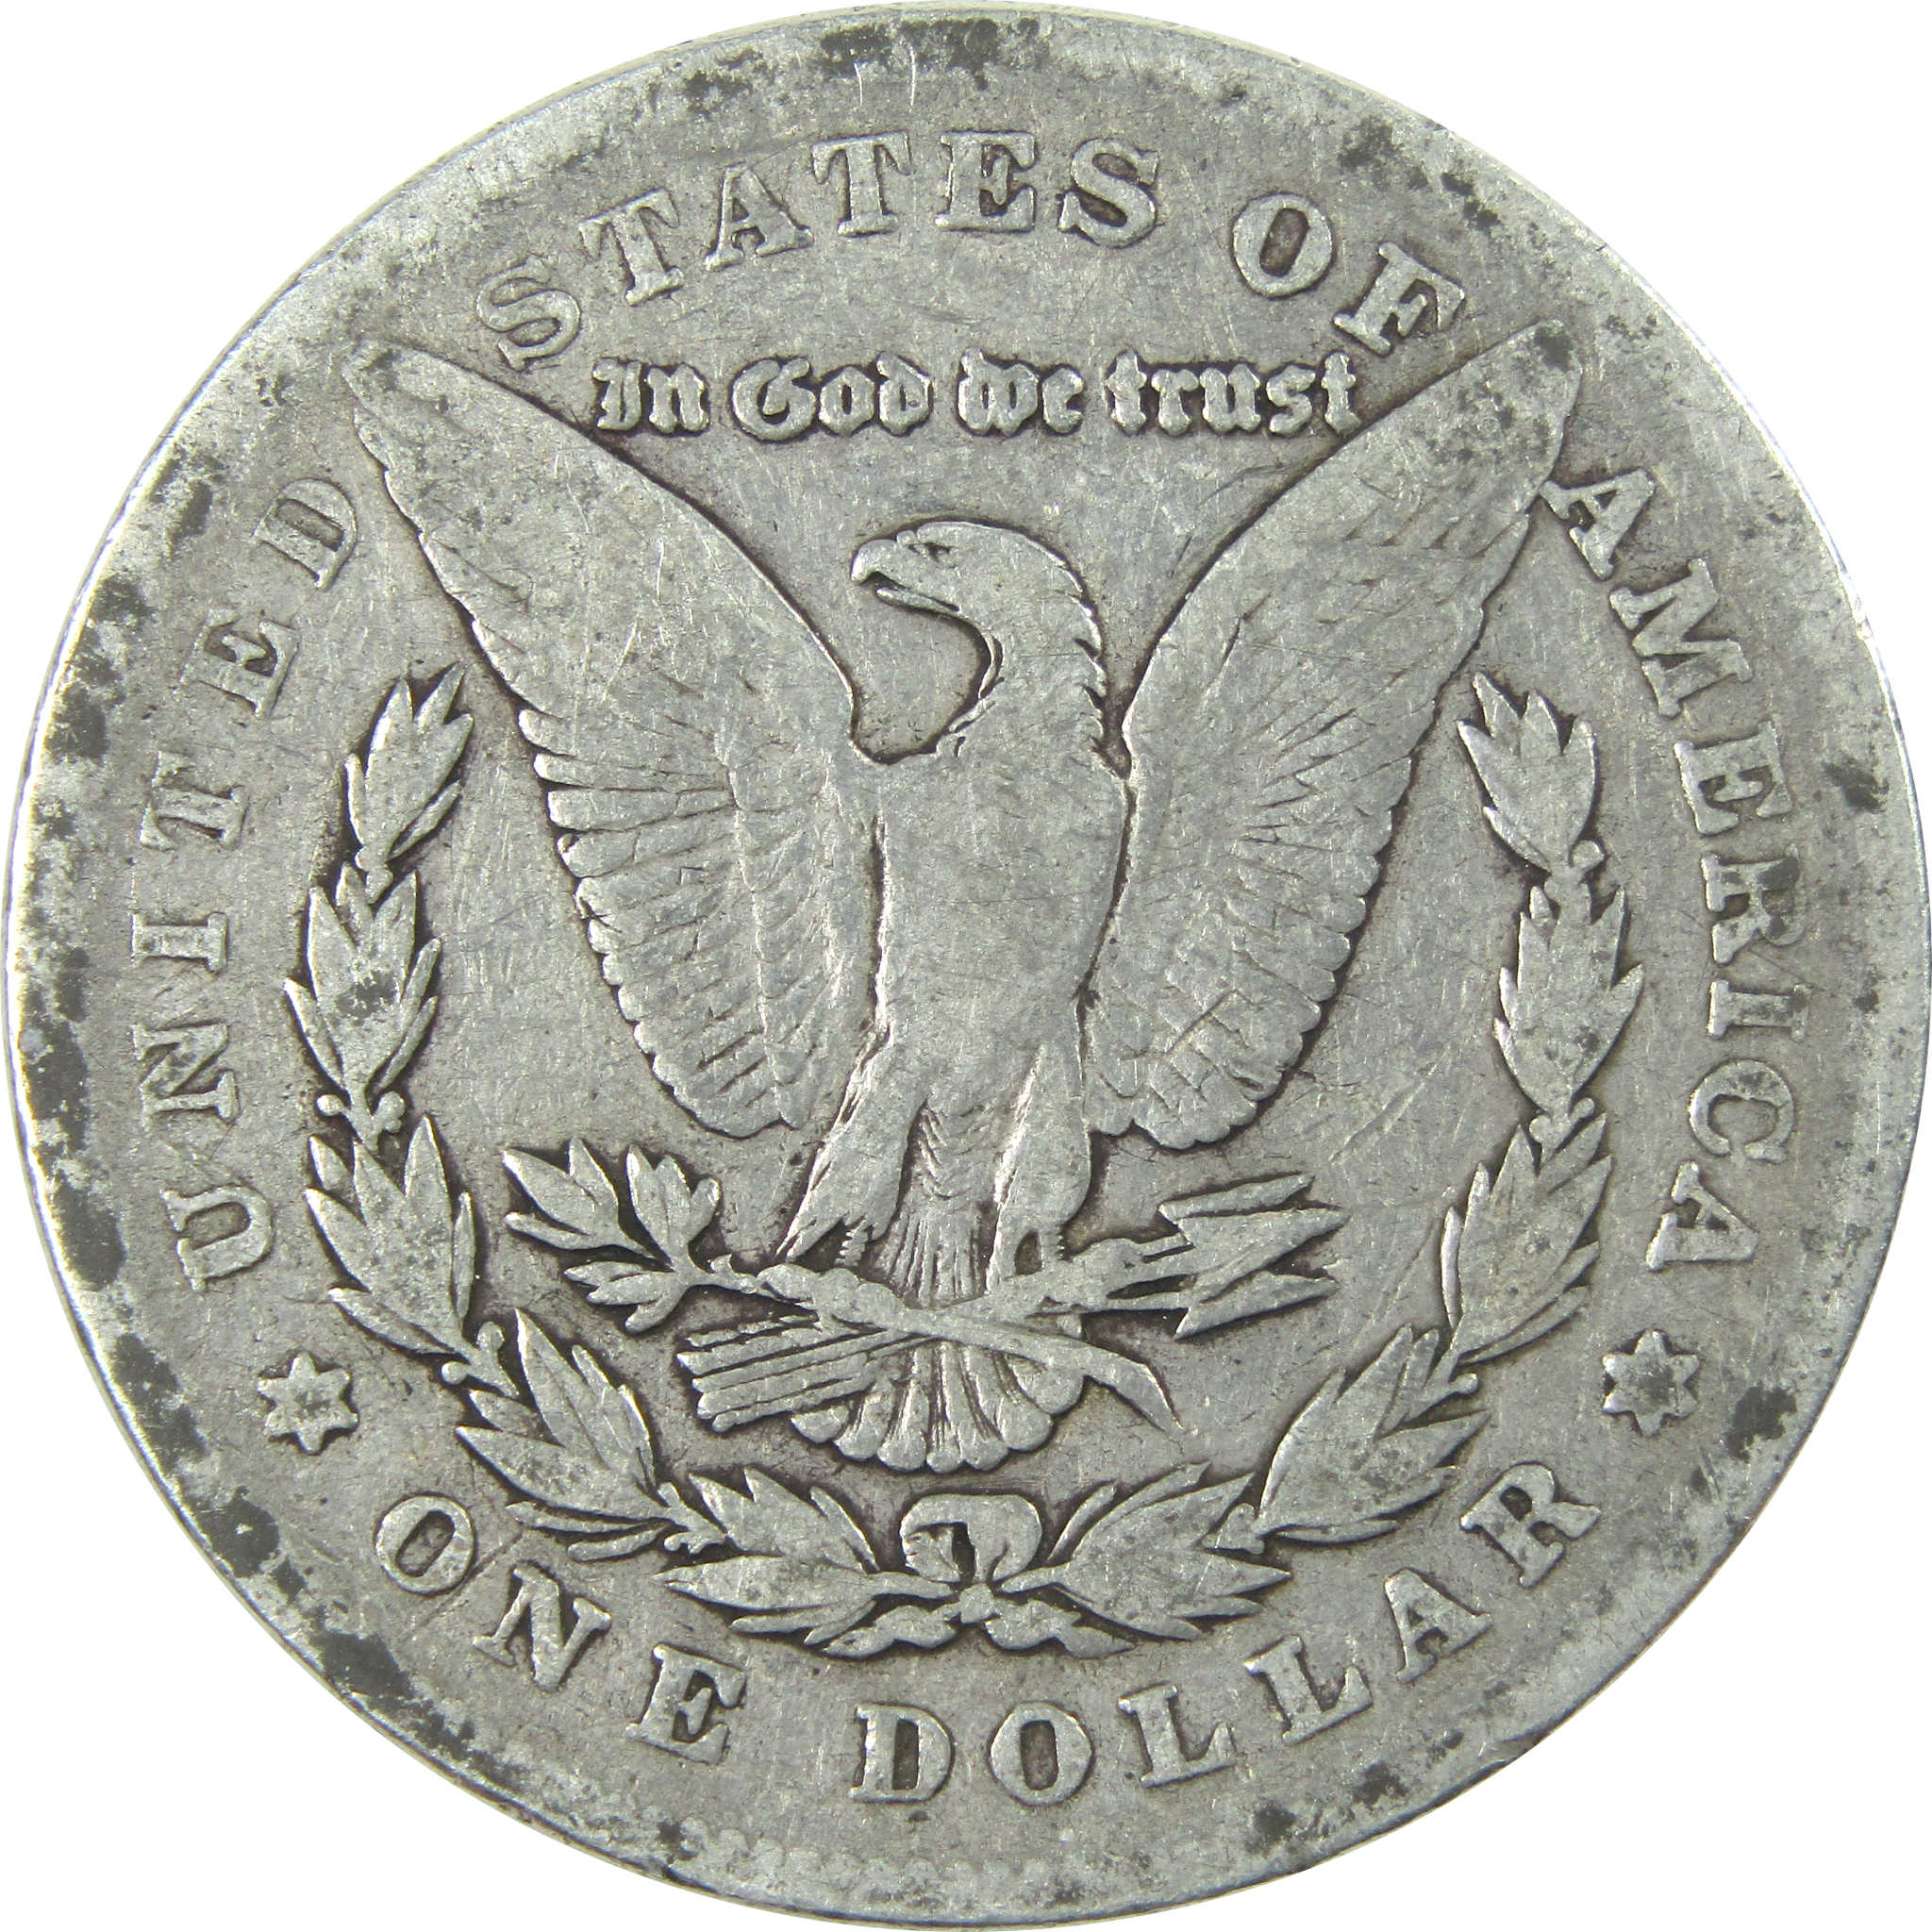 1878 7TF Rev 78 Morgan Dollar VG Very Good Silver $1 Coin SKU:I13909 - Morgan coin - Morgan silver dollar - Morgan silver dollar for sale - Profile Coins &amp; Collectibles